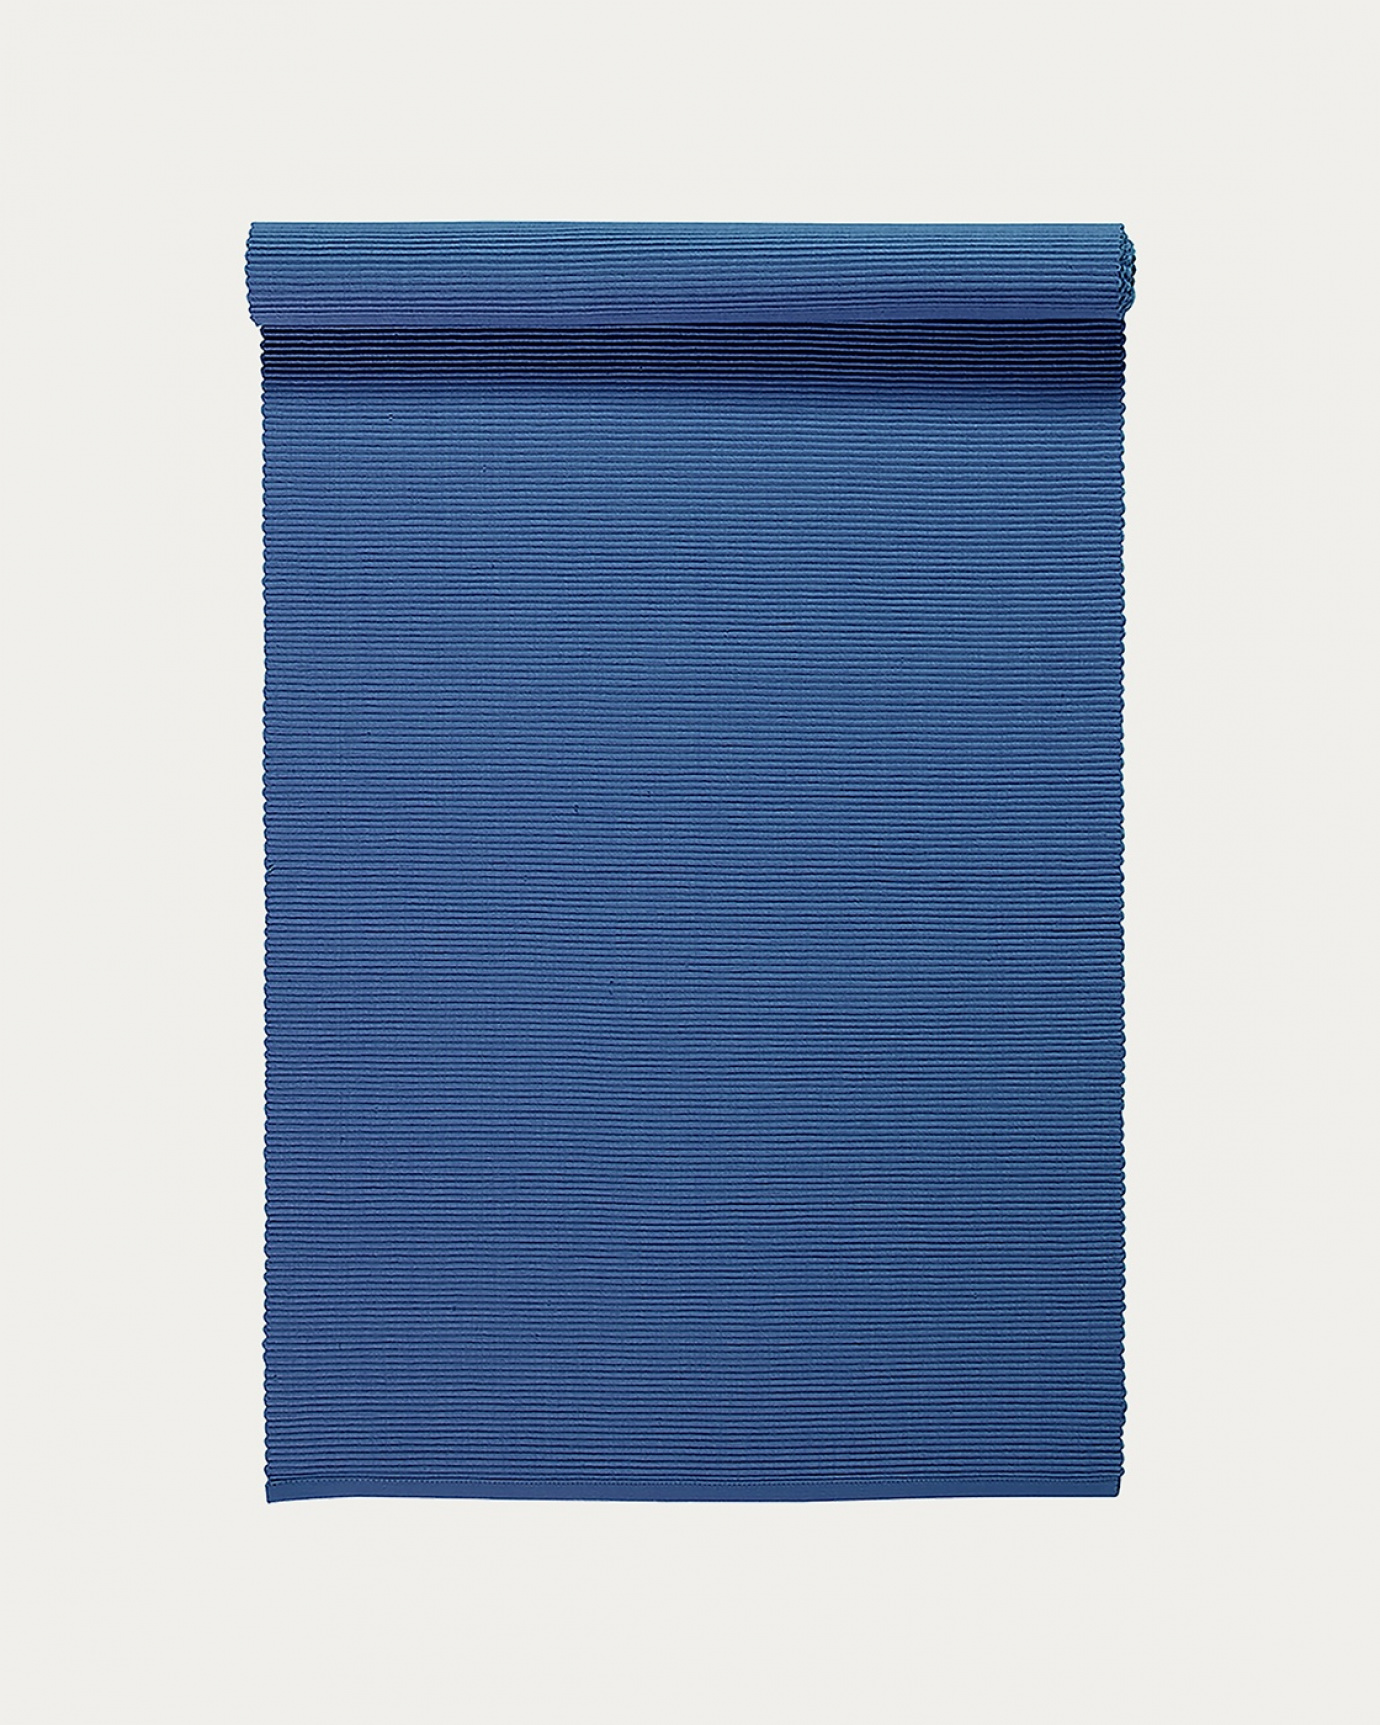 Image du produit chemin de table UNI bleu marine clair en coton doux de qualité côtelée de LINUM DESIGN. Taille 45 x 150 cm.